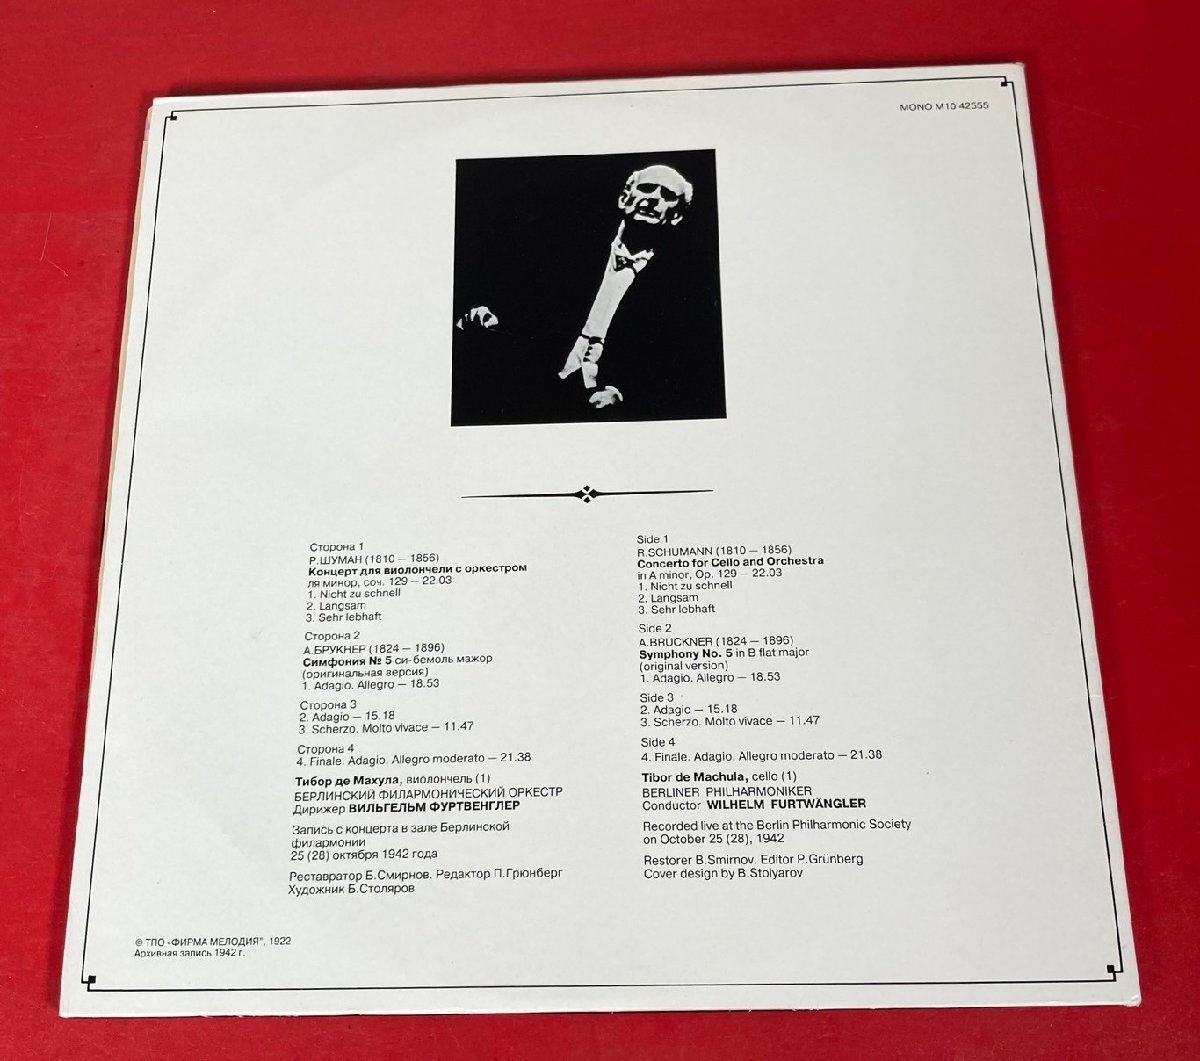 【レコードコレクター放出品】 LP フルトヴェングラー シューマン チェロ協奏曲 ブルックナー 交響曲 第5番 2枚組 露メロディア盤の画像2